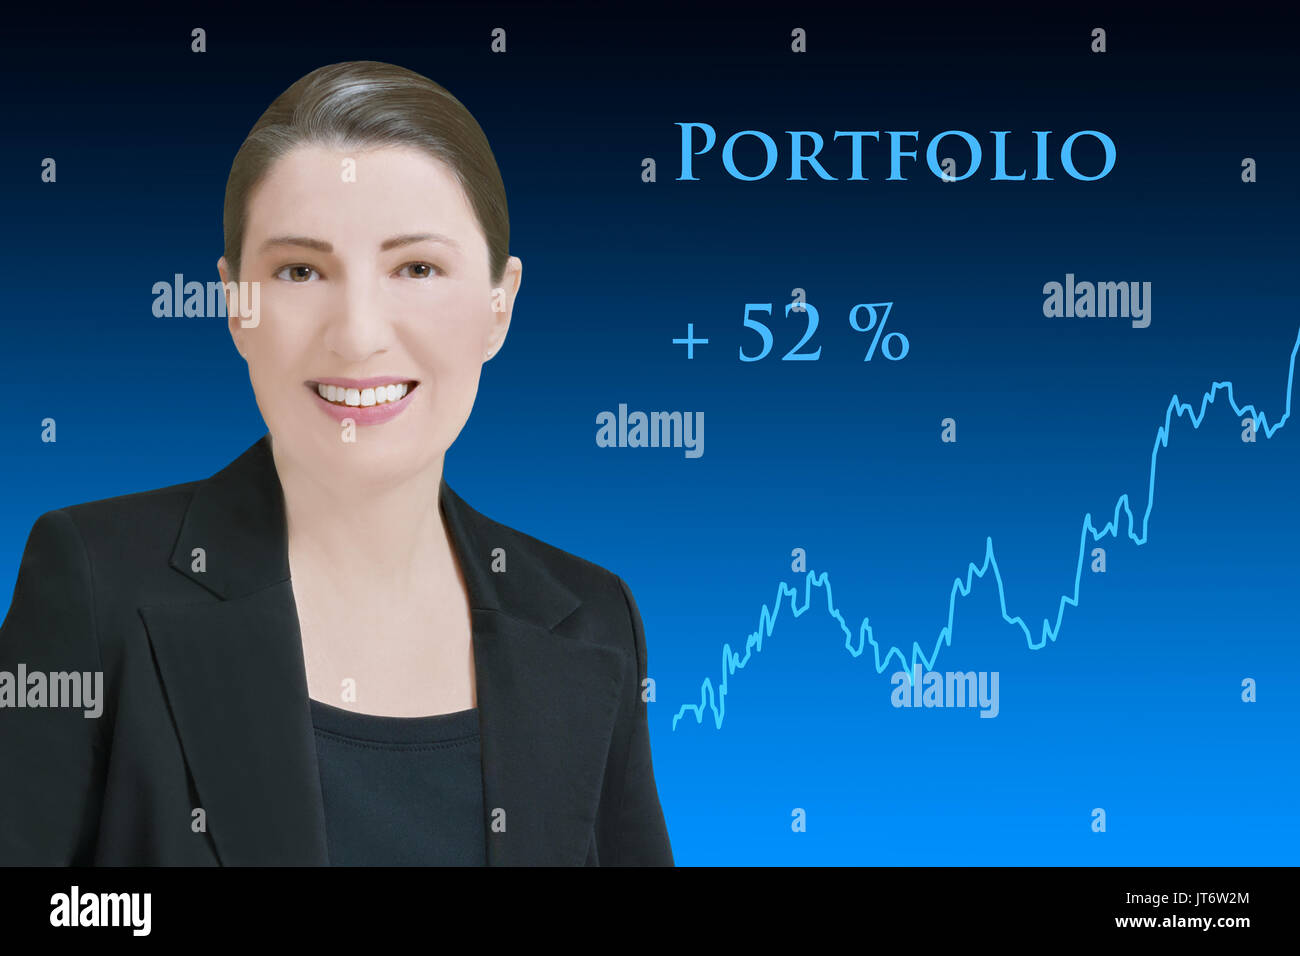 Robo-hembra advisor, amable sonriente mujer artificial delante del telón de fondo azul con un gráfico ascendente hacia arriba, mostrando la gestión de activos rentables Foto de stock